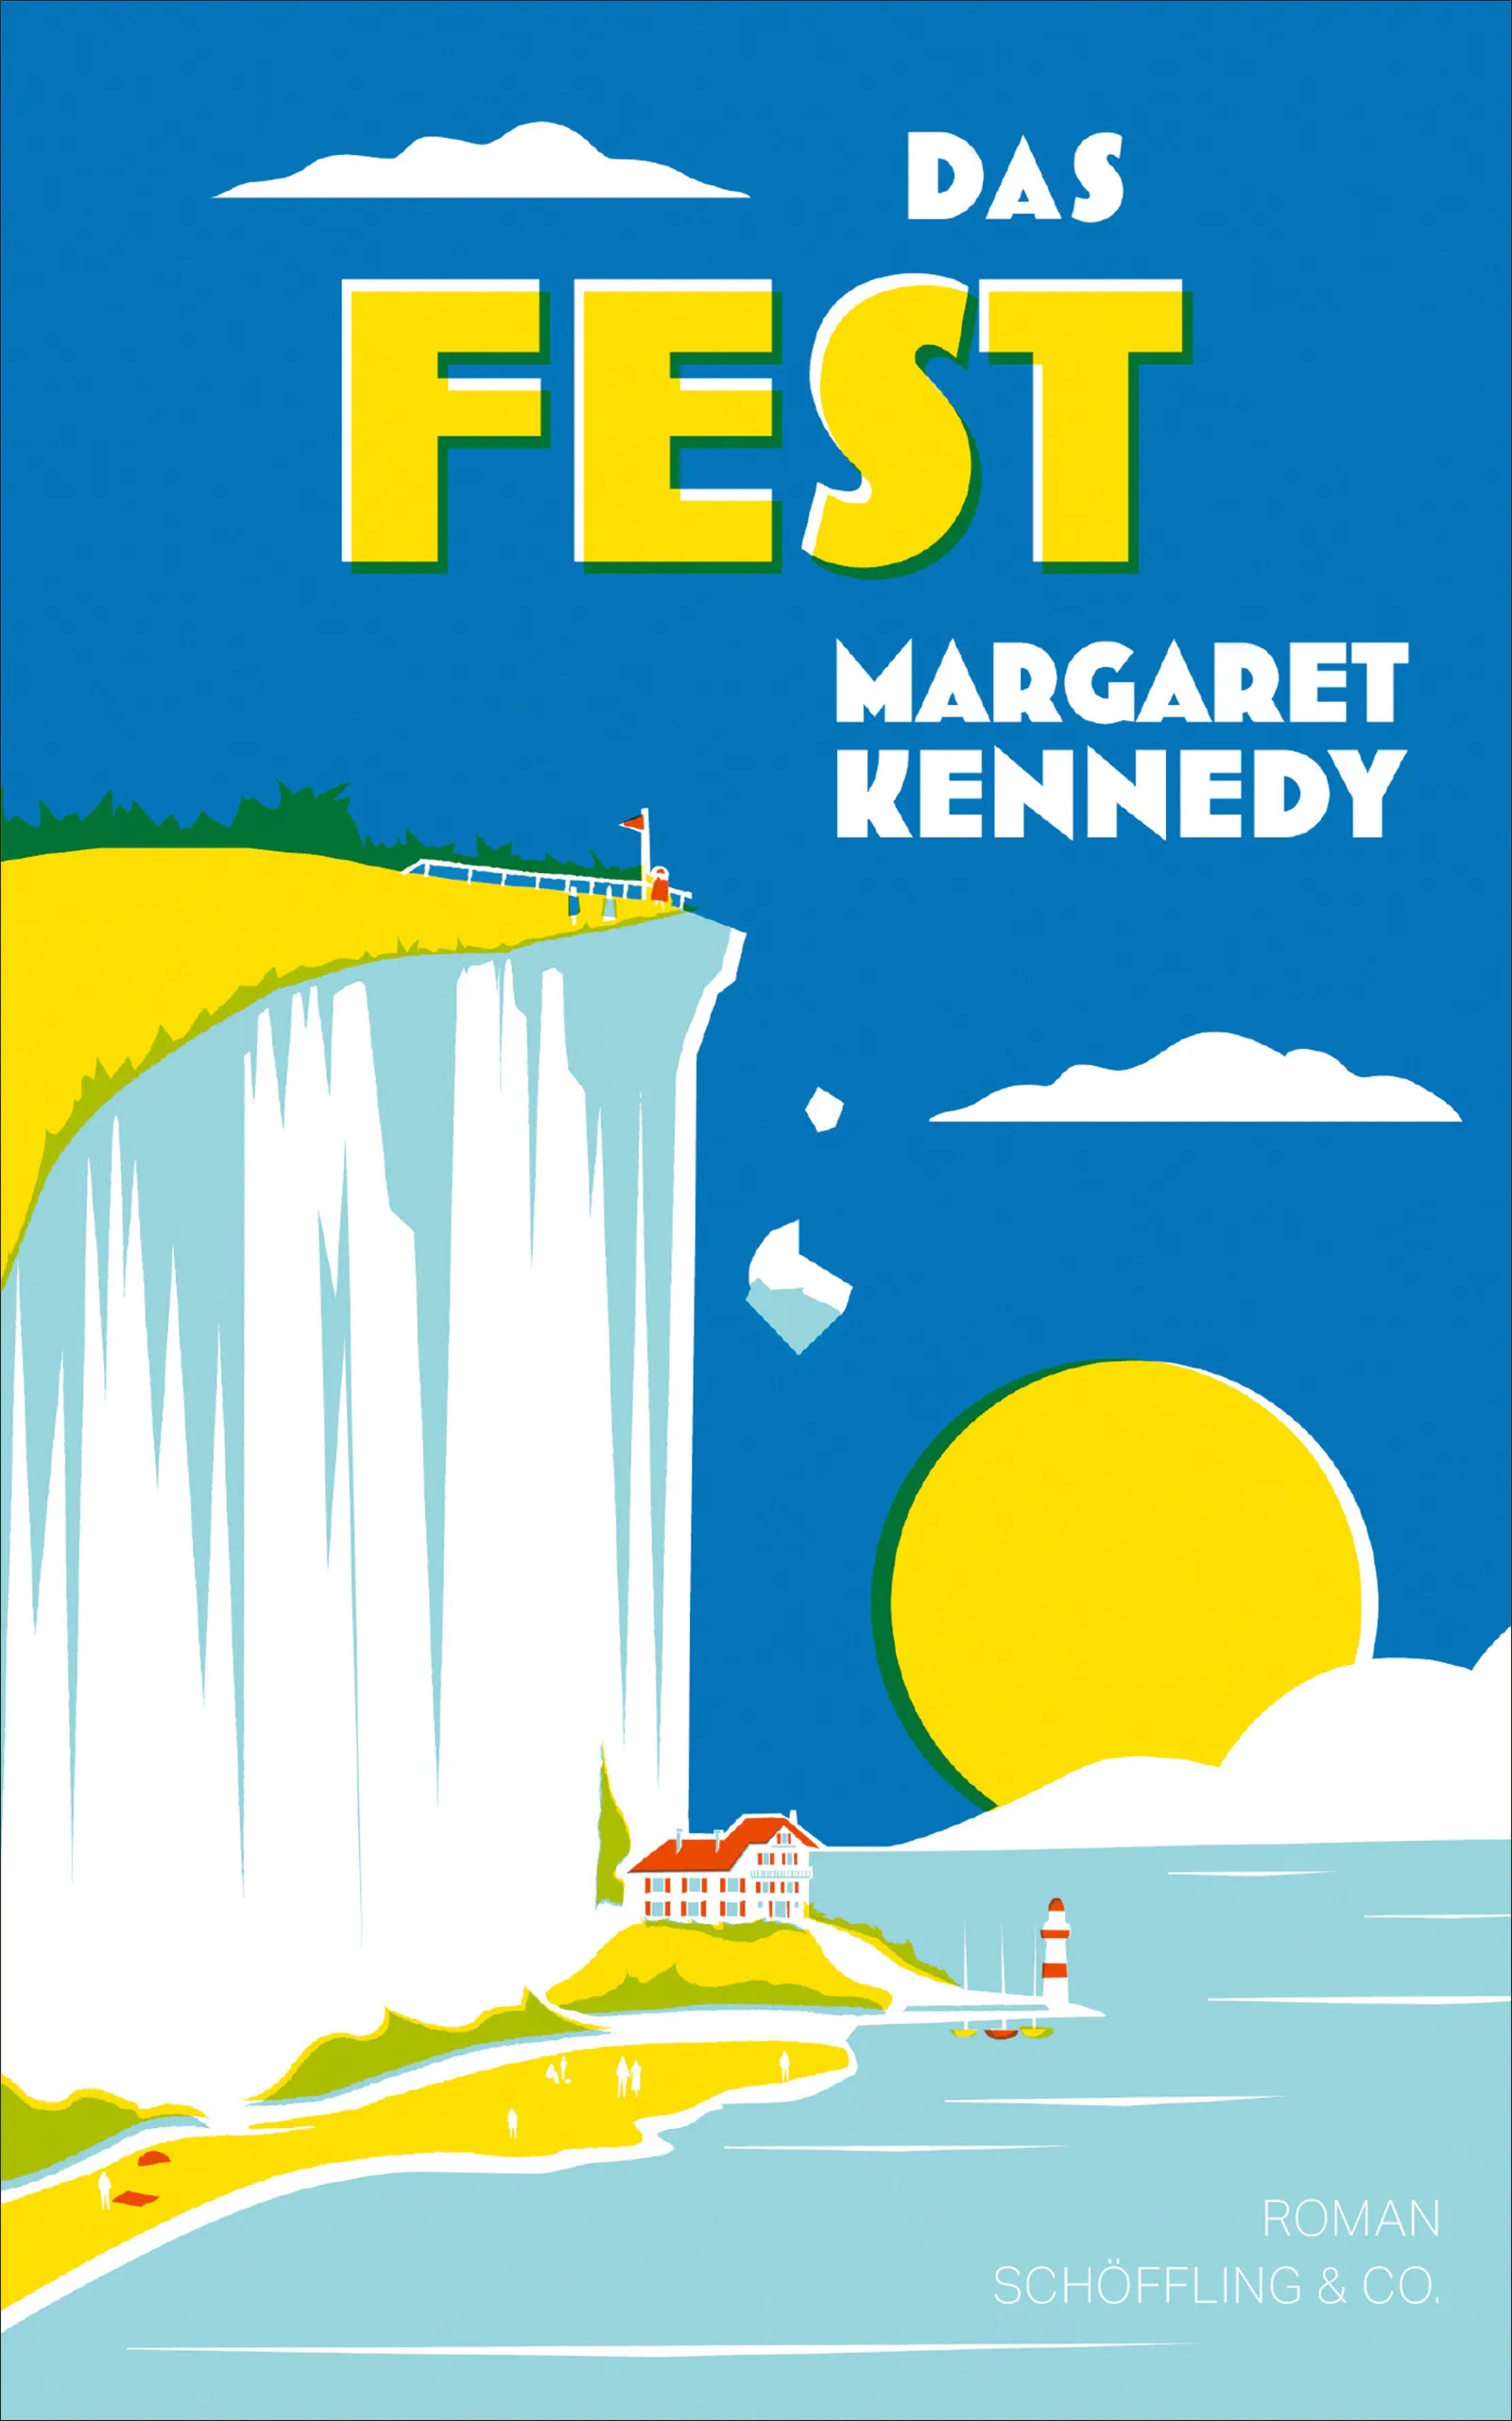 Roman "Das Fest" von Margaret Kennedy, erschienen bei Schöffling & Co.